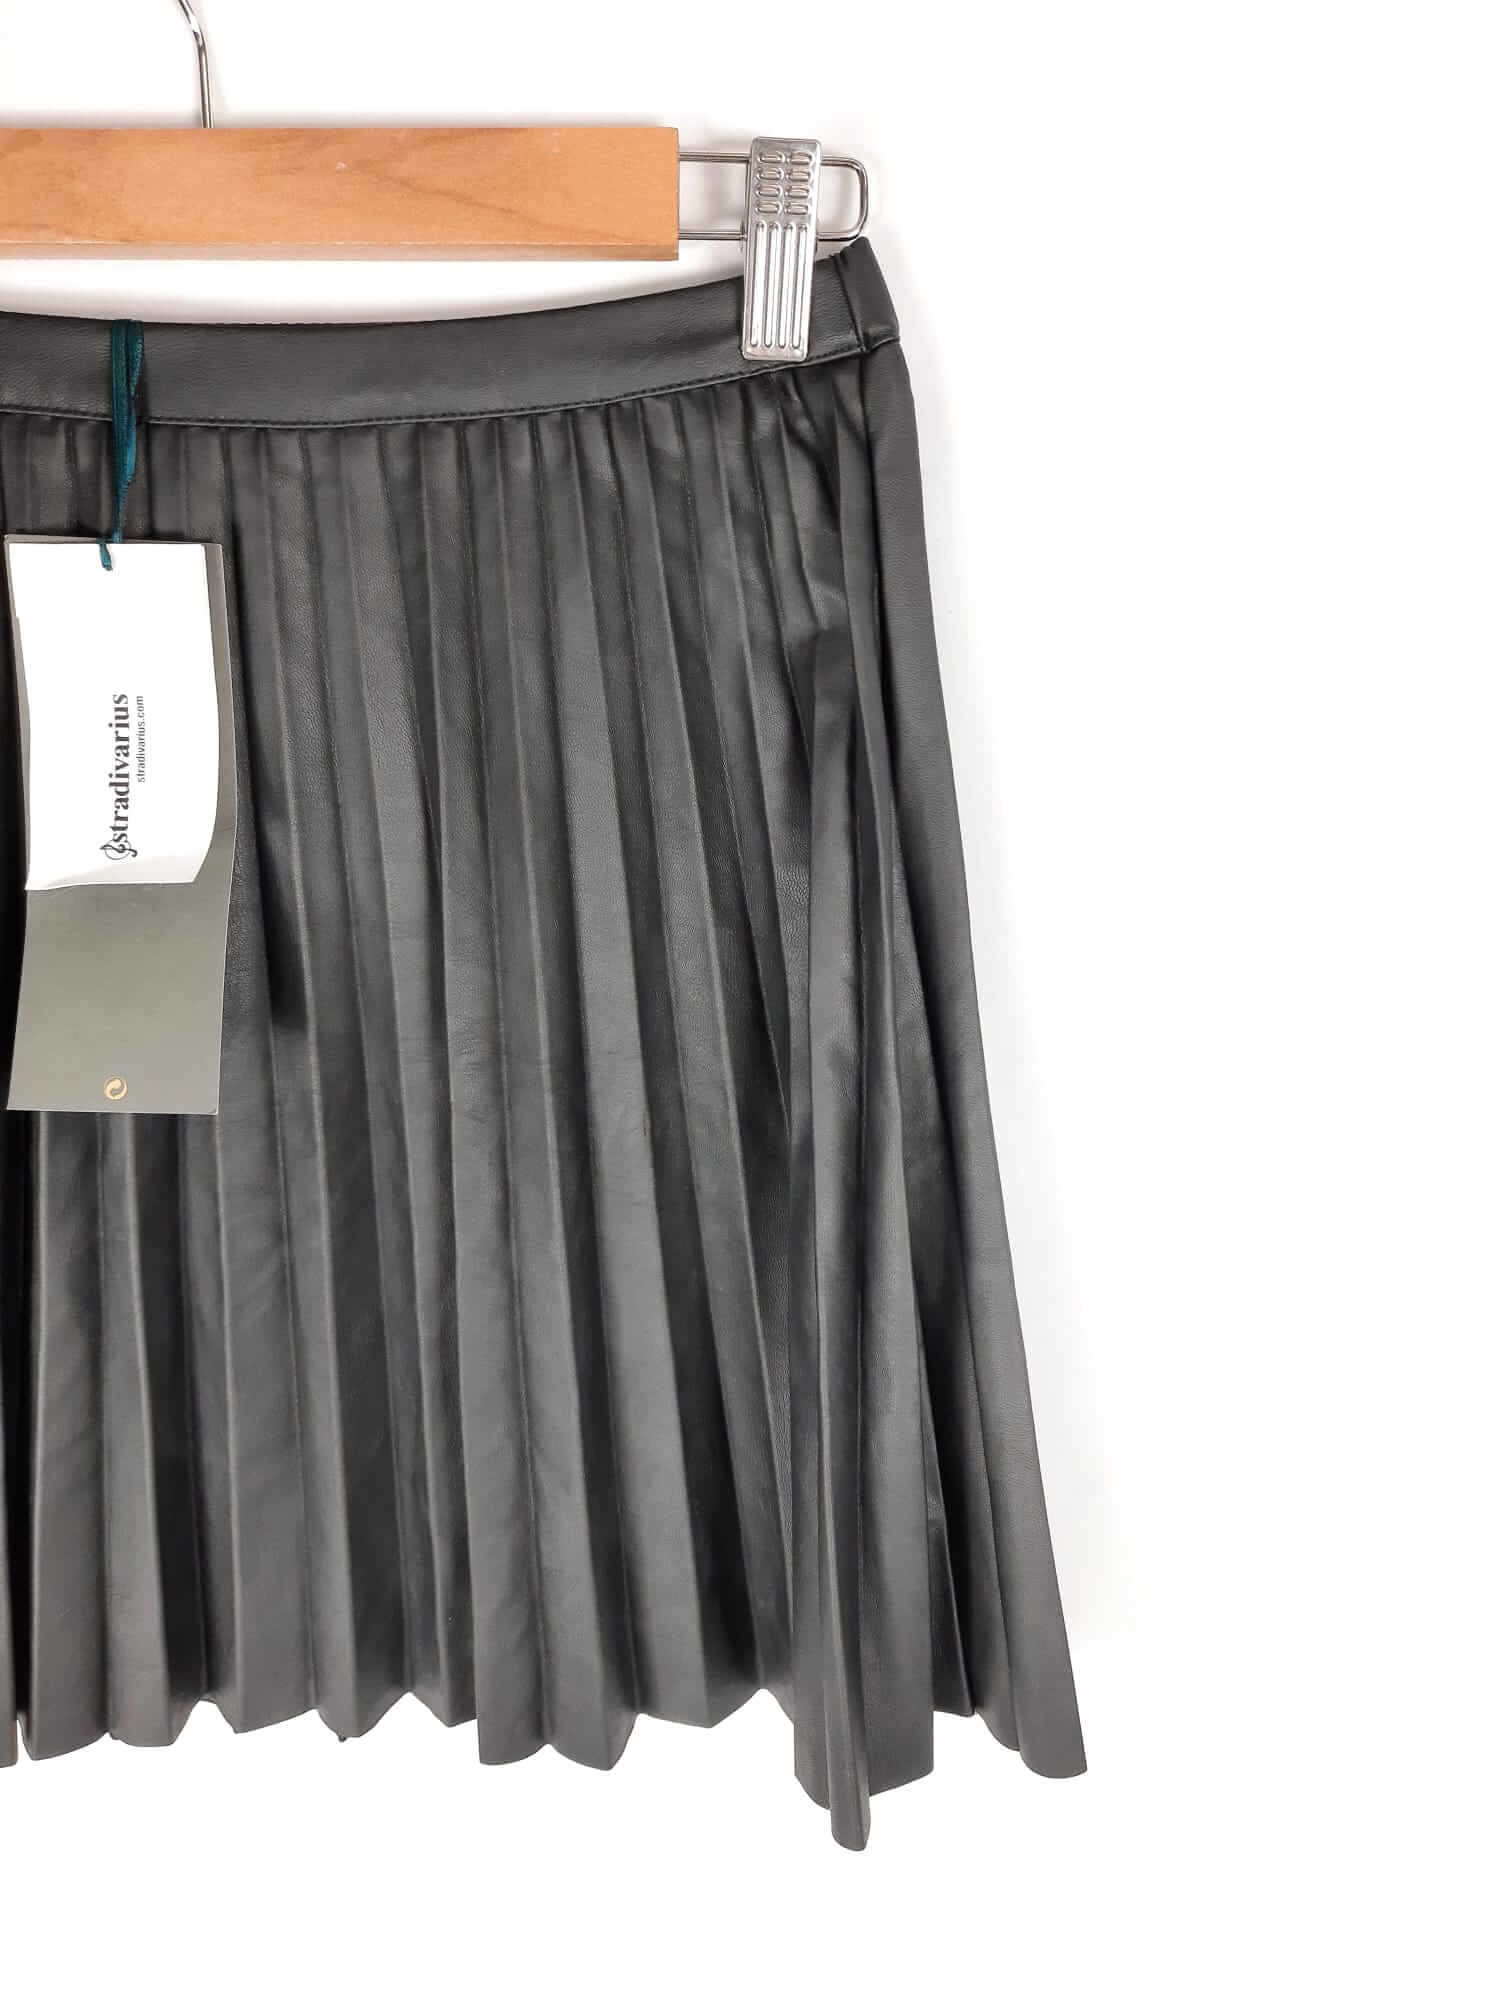 Nutrición máquina de coser fresa STRADIVARIUS. Falda negra polipiel plisada T.m – Hibuy market